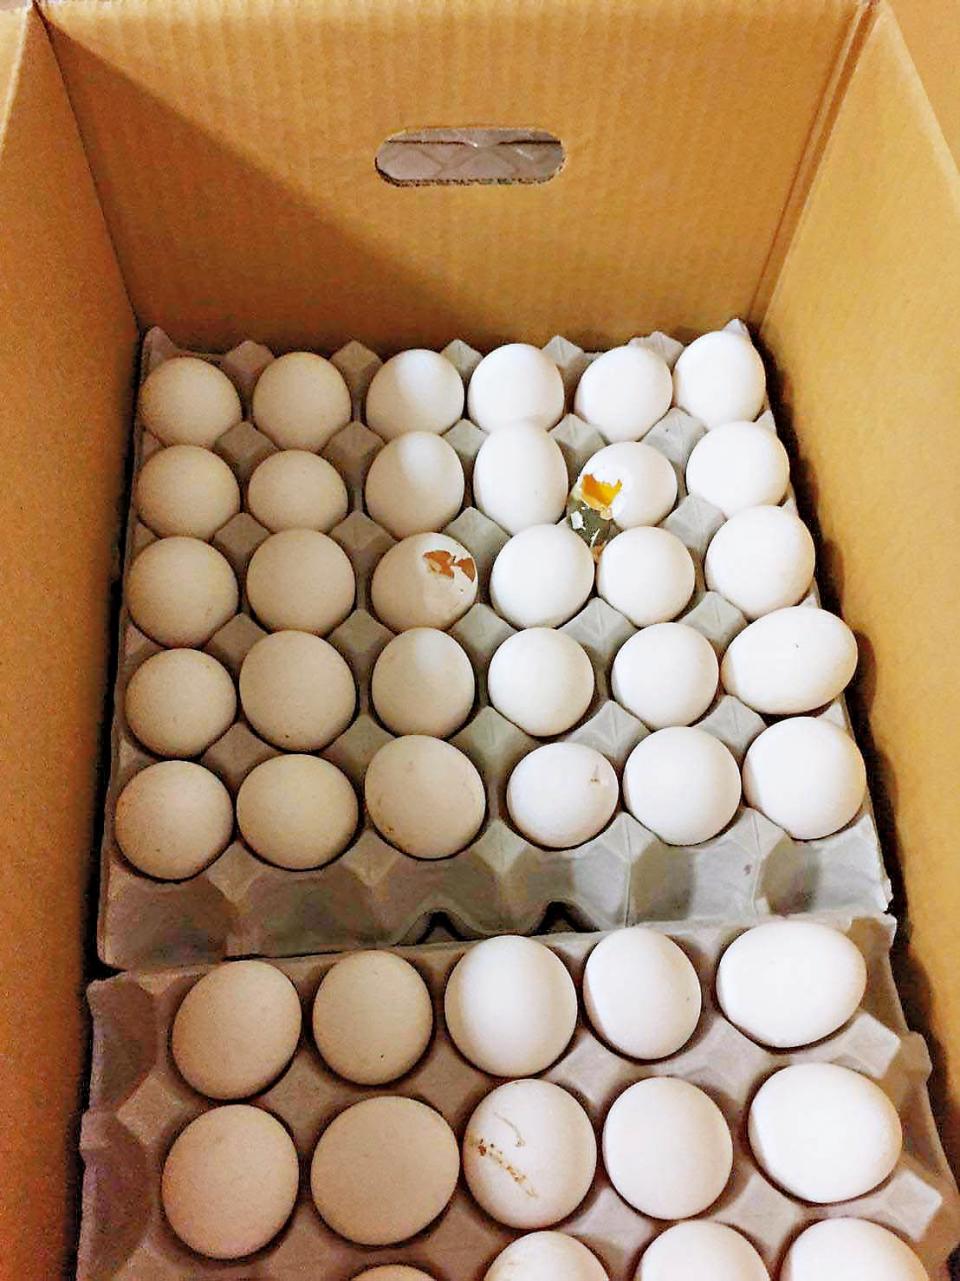 華成公司代理的雞蛋，在副供站被發現蛋殼破損、不新鮮。